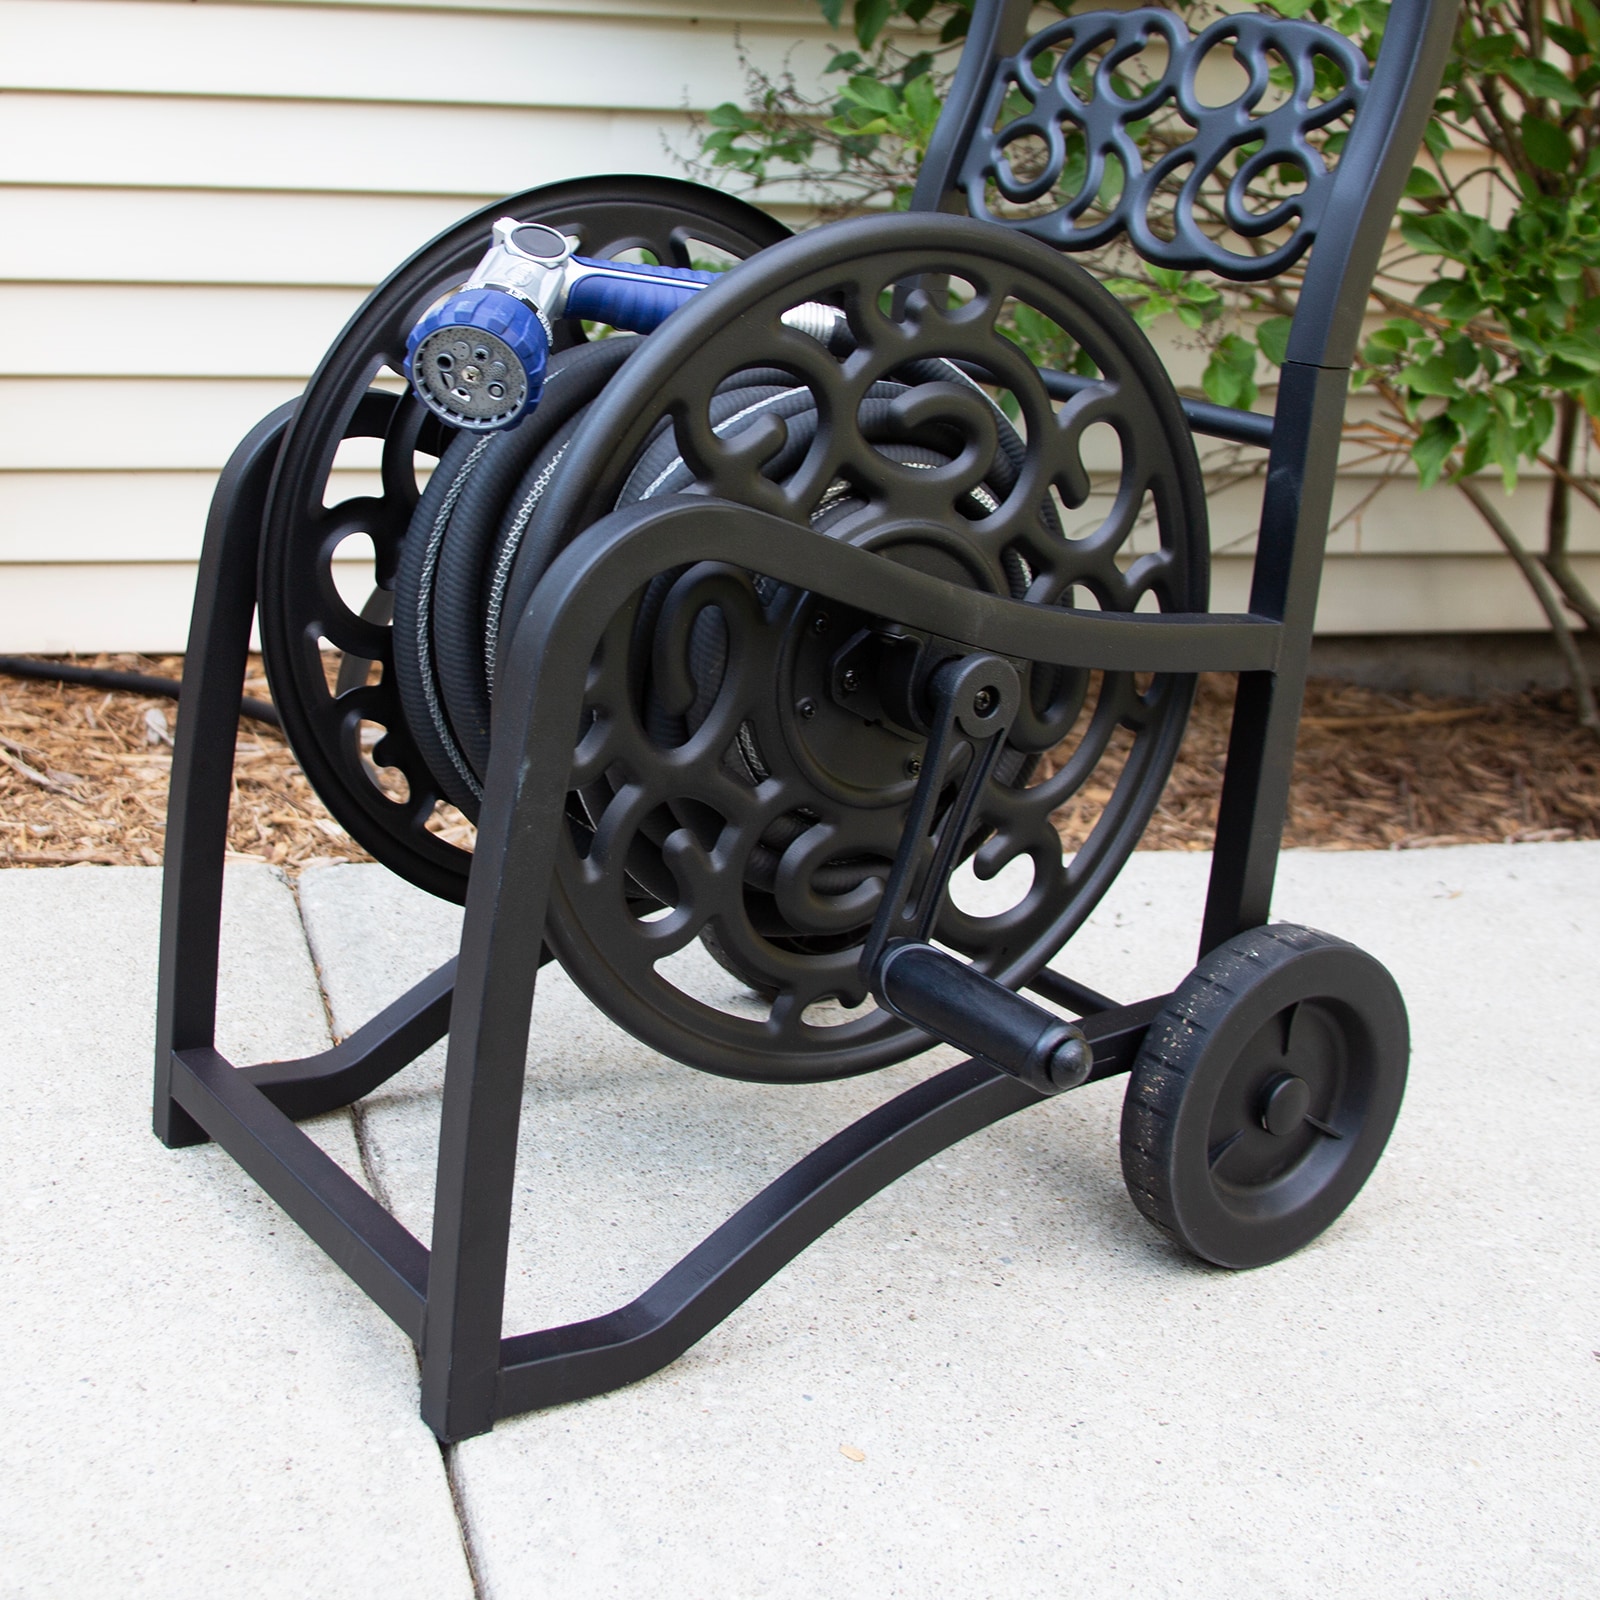  Metal Garden Hose Reel Cart 240 ft Heavy-Duty Rust Steel  Resistant Rustic Outdoor Mobile & ebook : Patio, Lawn & Garden